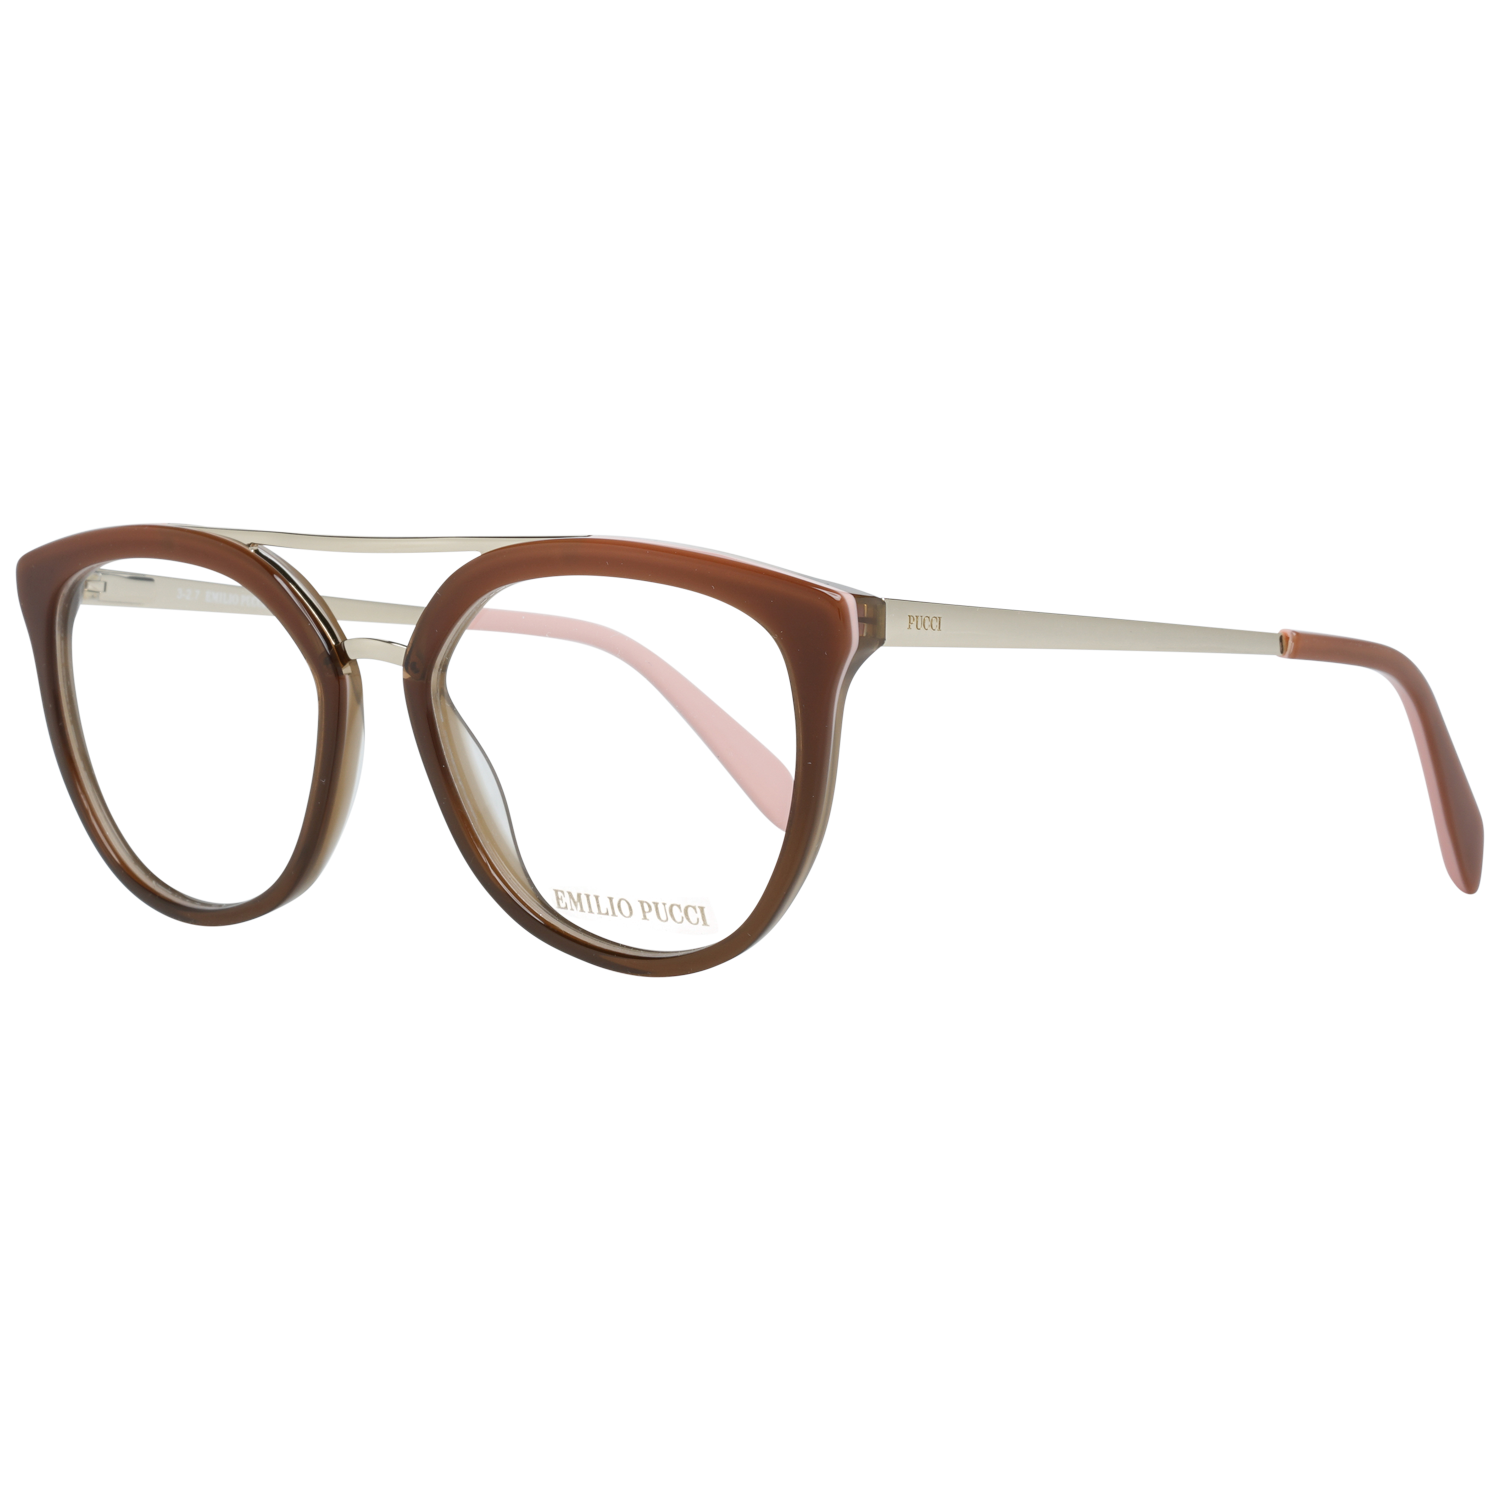 Emilio Pucci Frames Emilio Pucci Optical Frame EP5072 071 52 Eyeglasses Eyewear UK USA Australia 